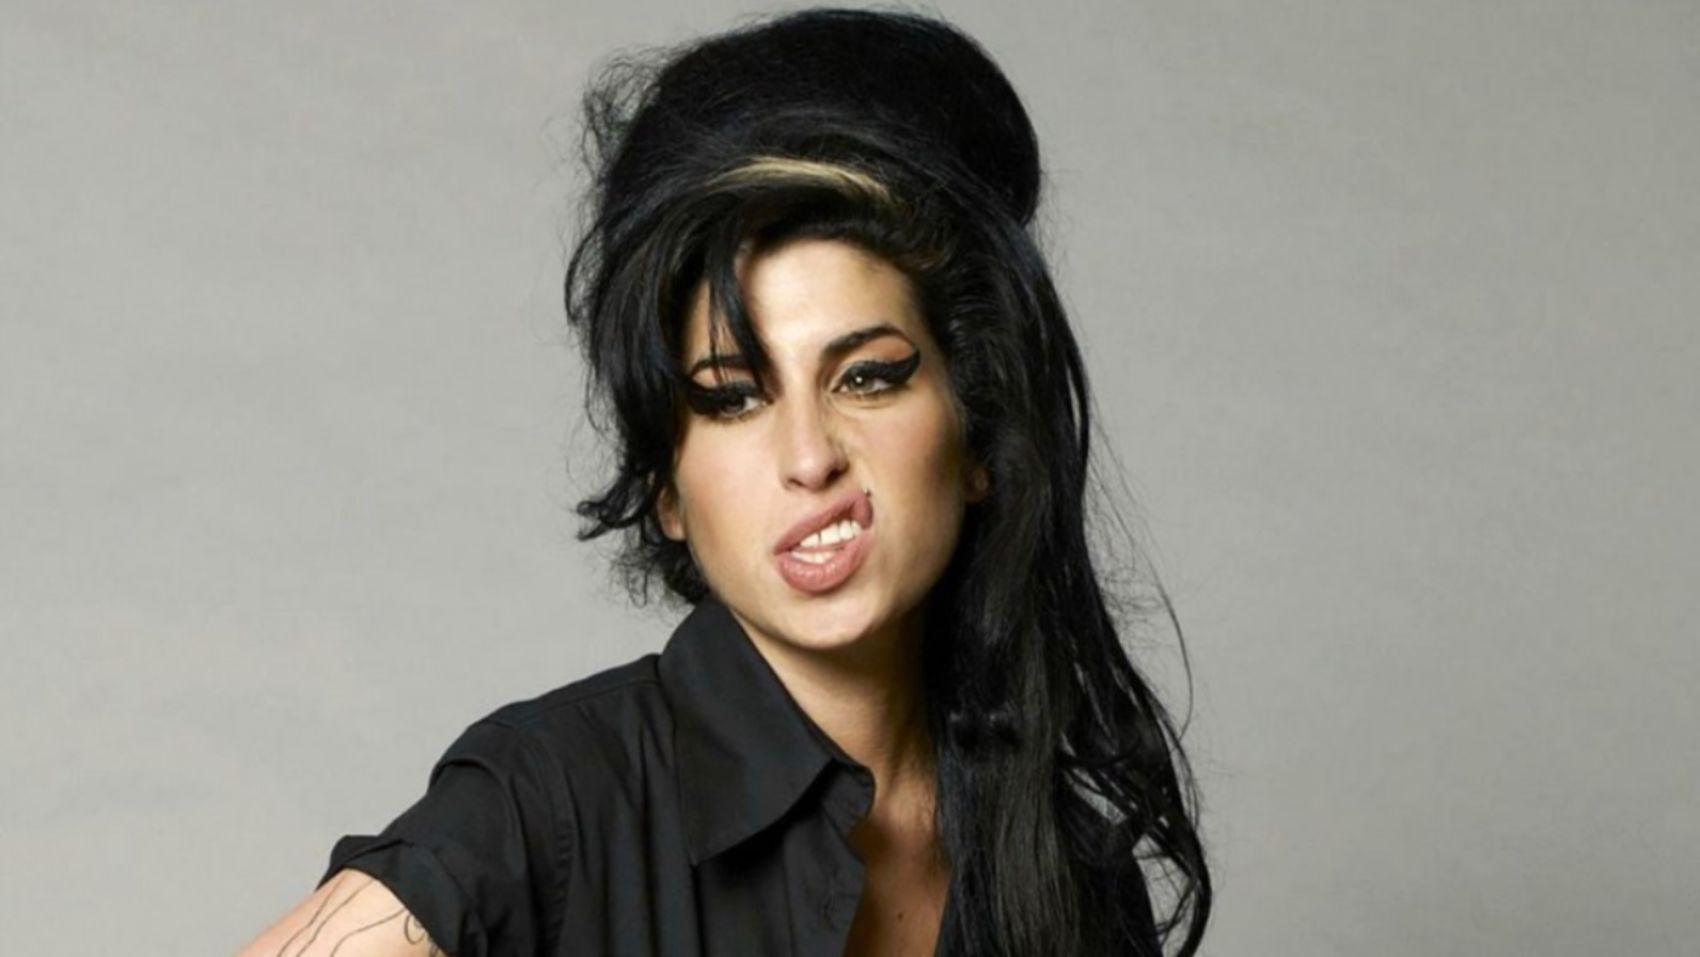 Sale a la luz el primer tráiler de la película de Amy Winehouse 